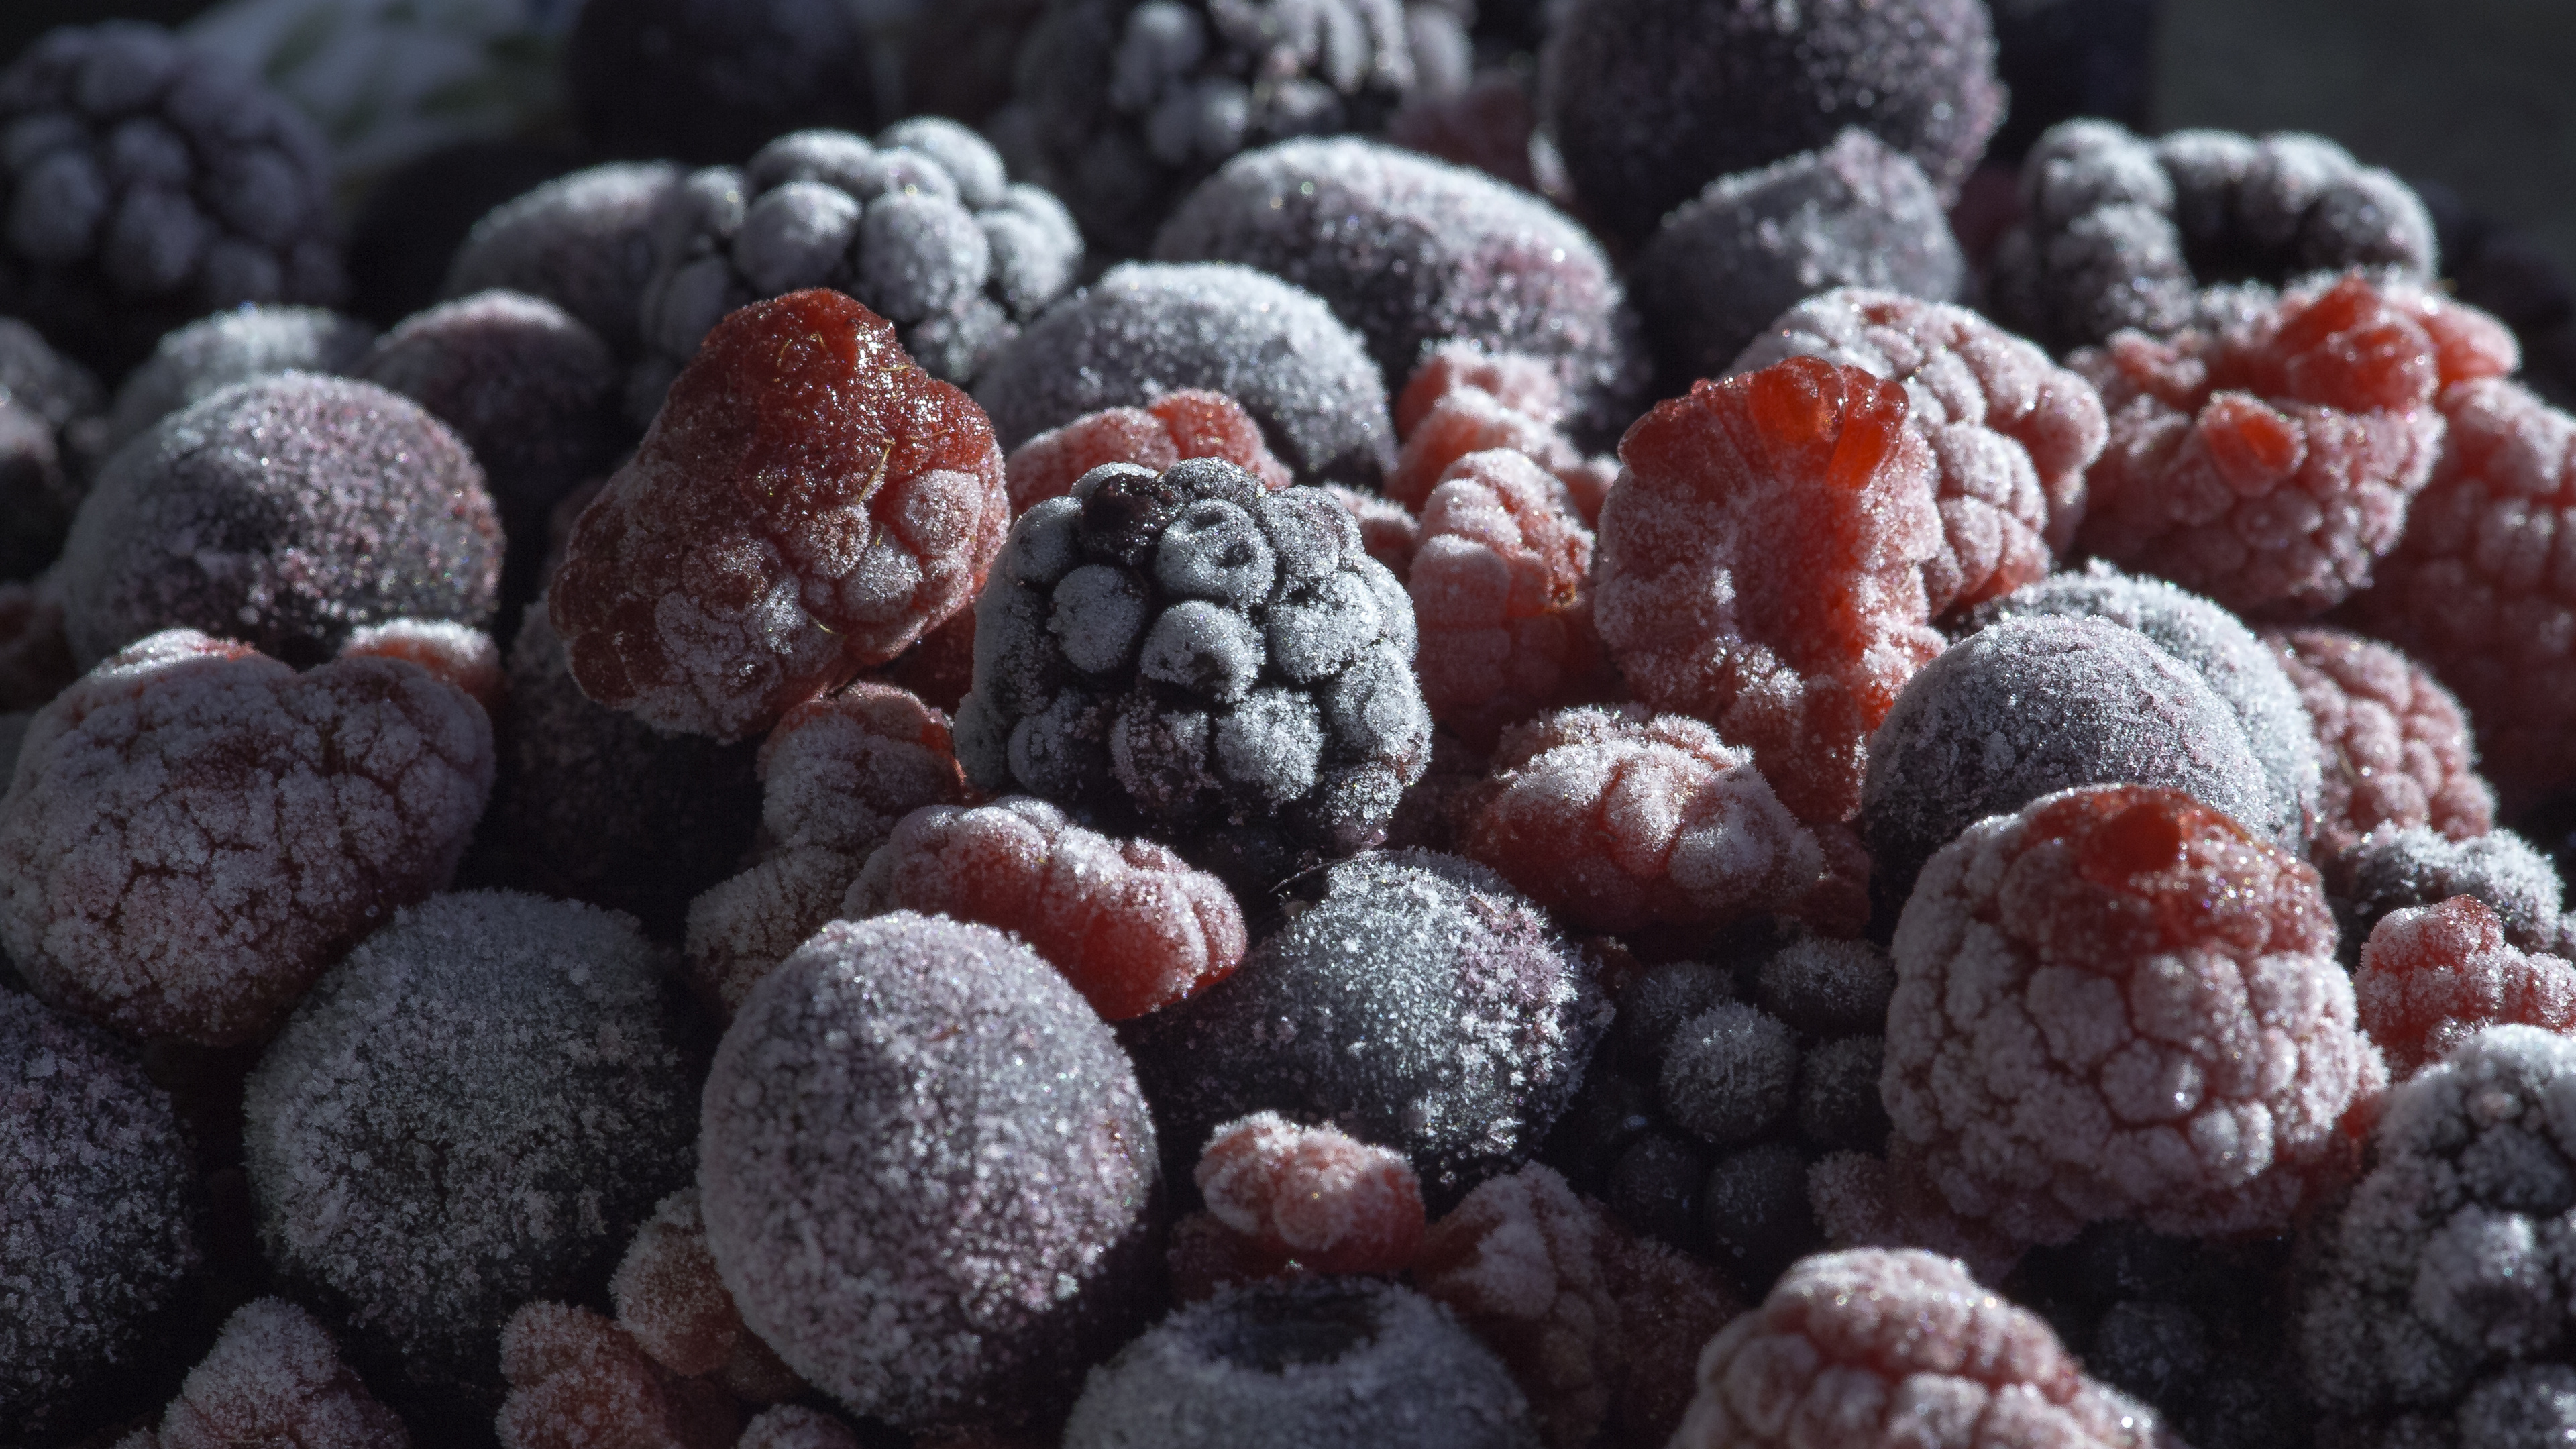 蓝莓, 树莓, 食品, 天然的食物, 甜头 壁纸 3840x2160 允许